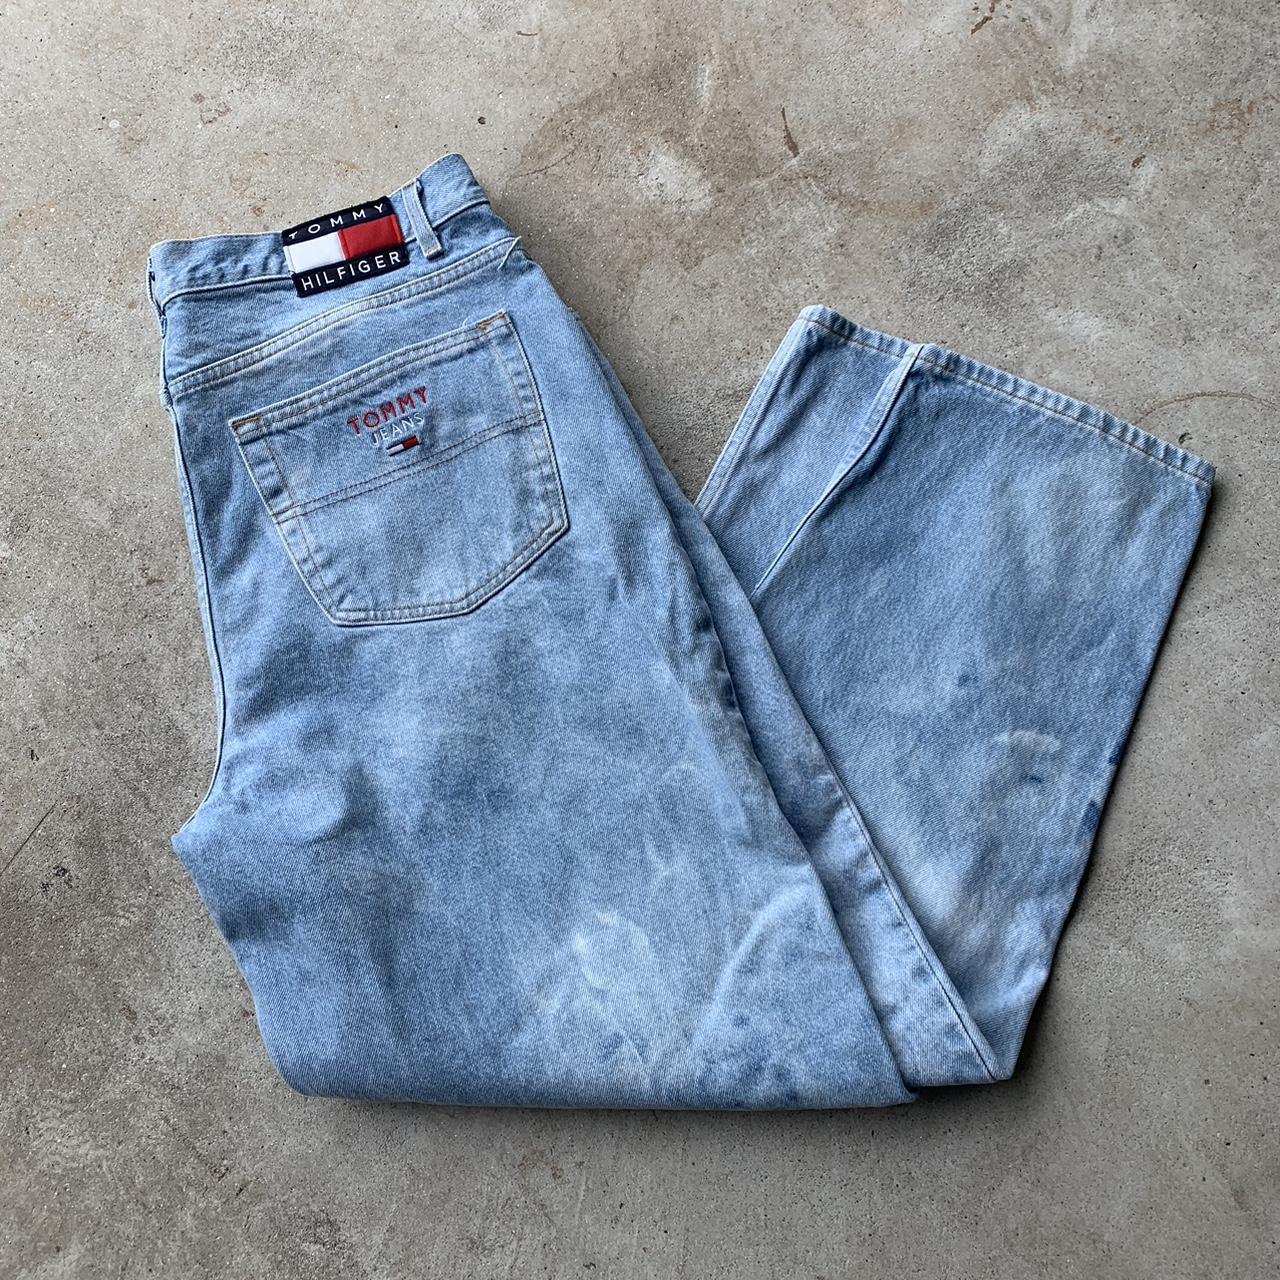 Vintage Tommy Hilfiger Jeans 💙 Measures 36x32 Free... - Depop